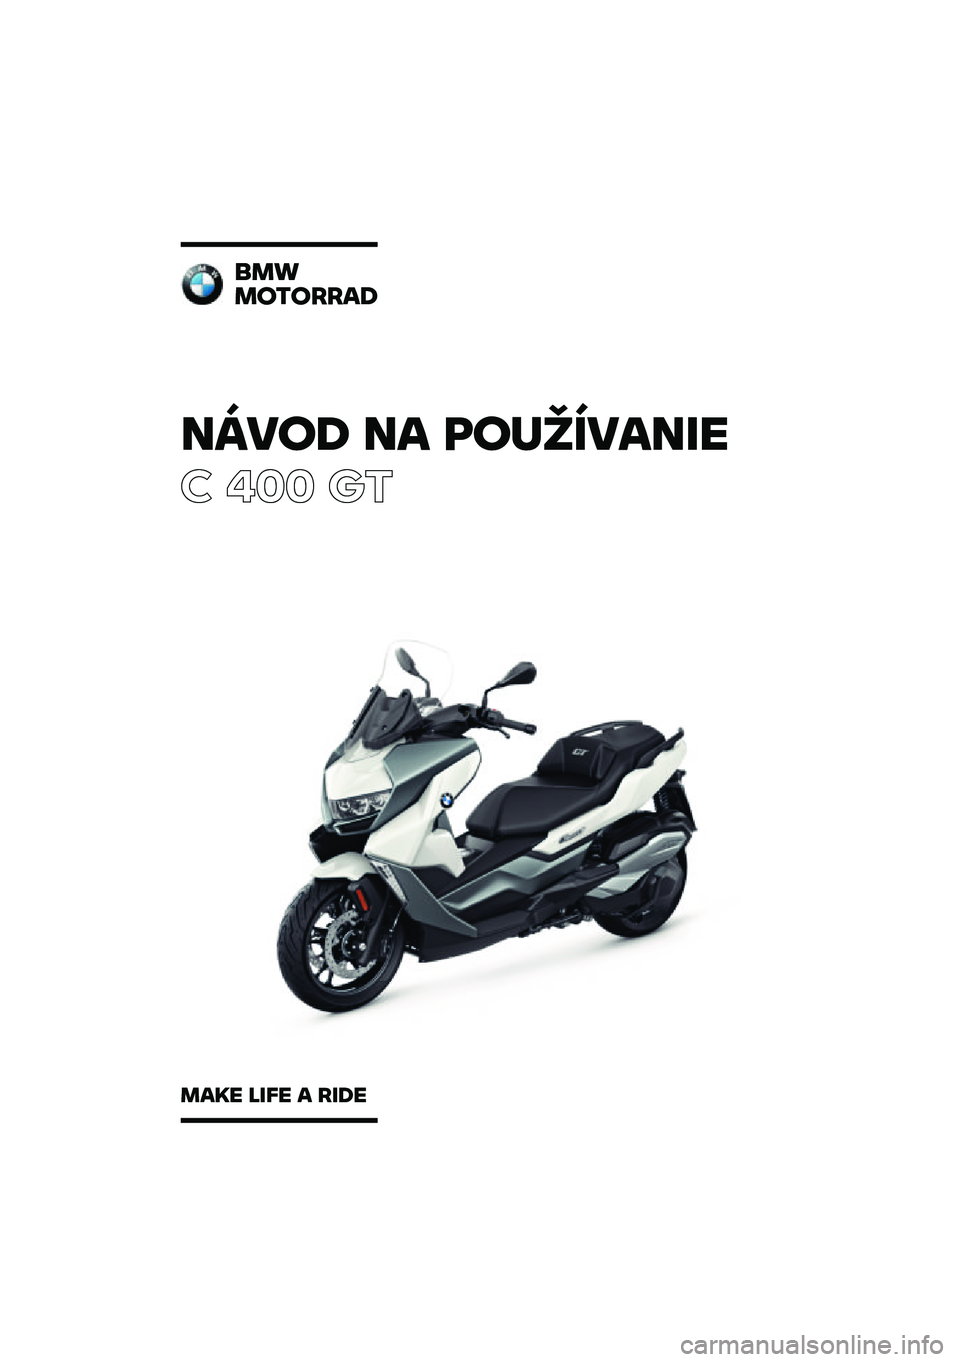 BMW MOTORRAD C 400 GT 2020  Návod na používanie (in Slovak) �����\b �� �	��
�������
� ��� ��\b
���
��������\b
���� ���� � ���\b� 